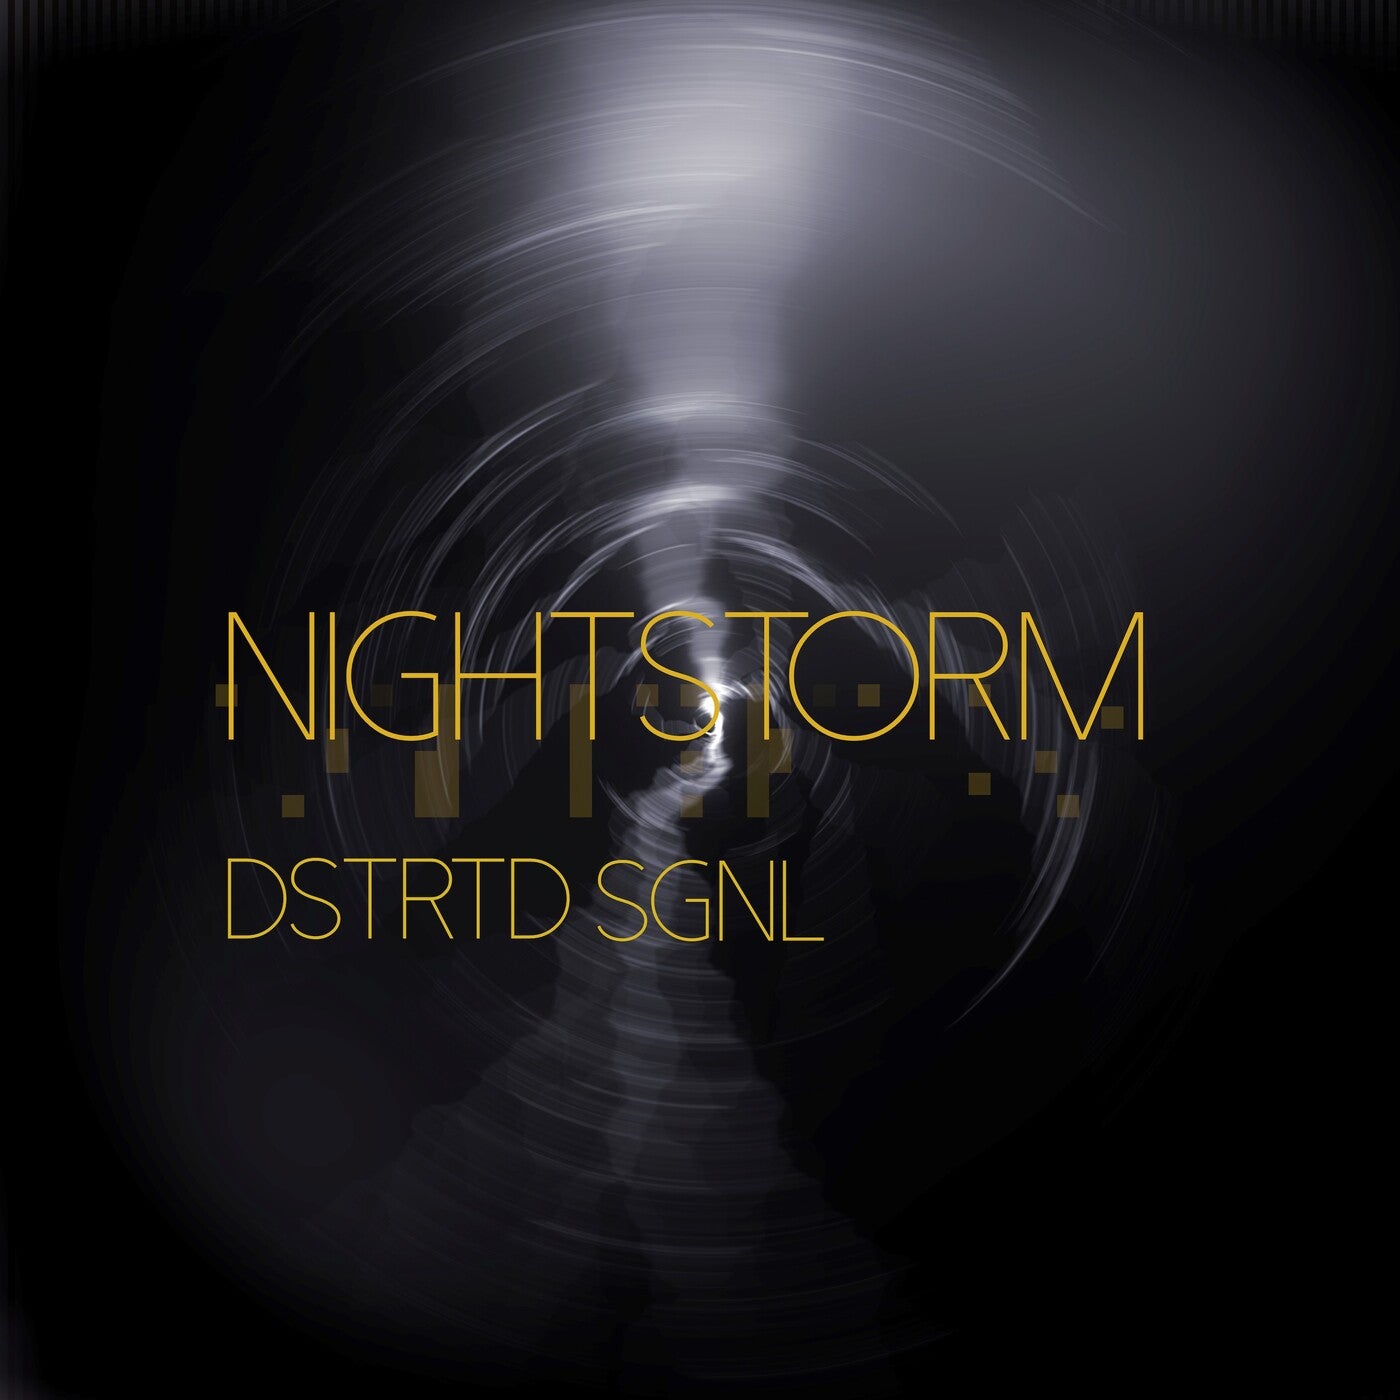 Nightstorm